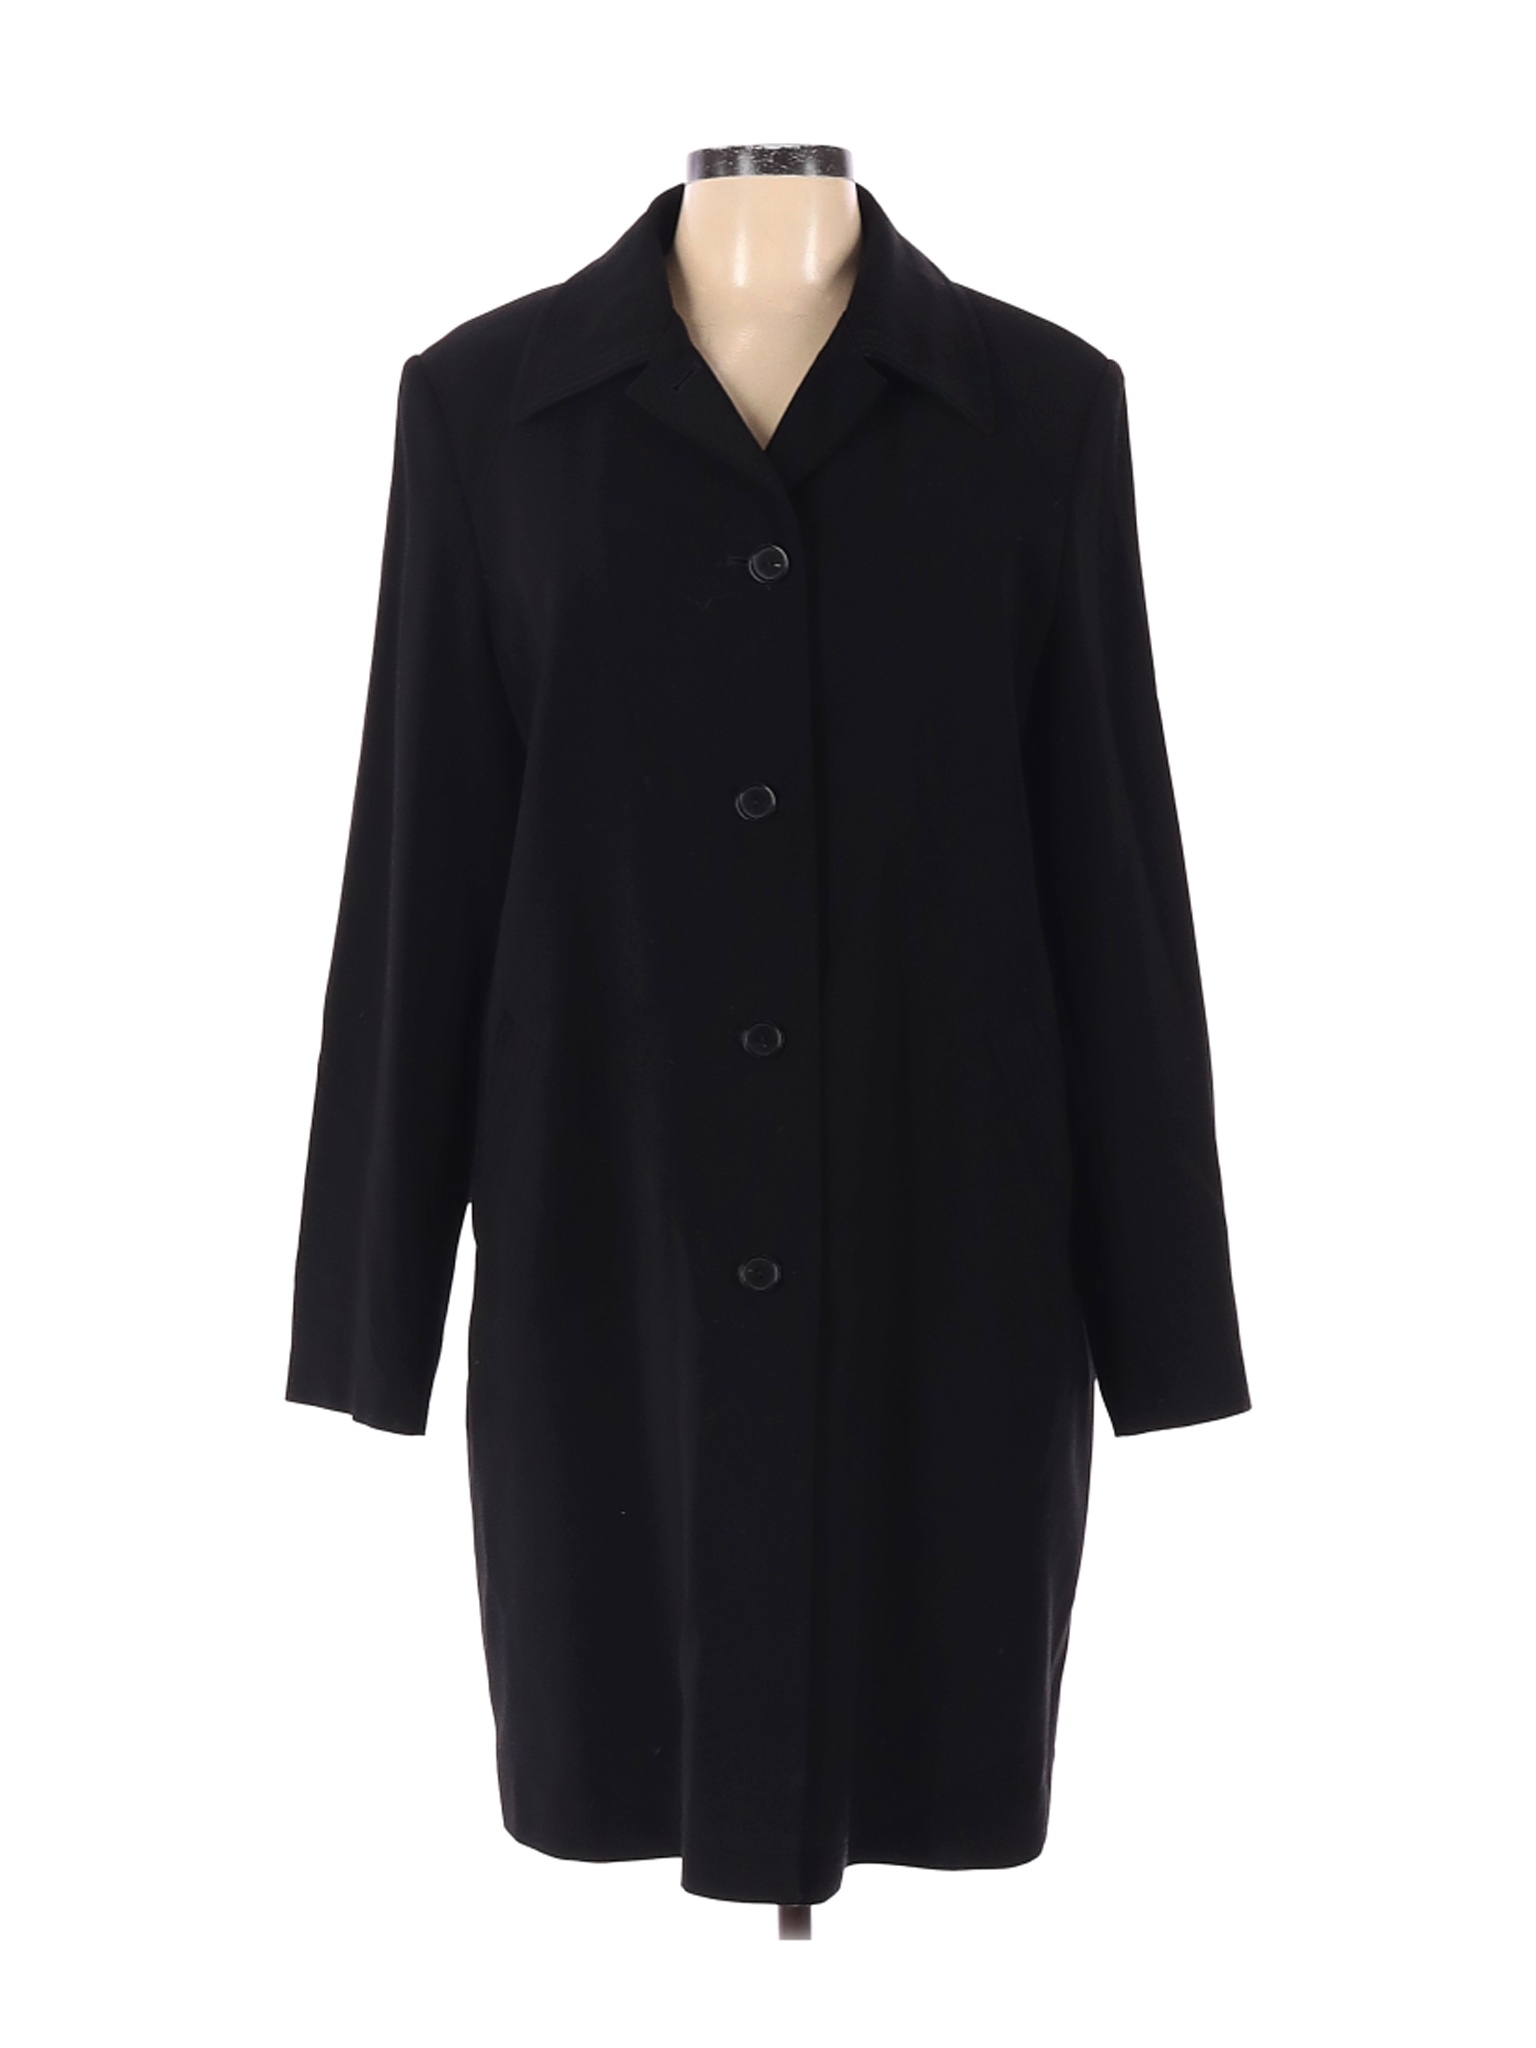 Gallery Women Black Coat L | eBay